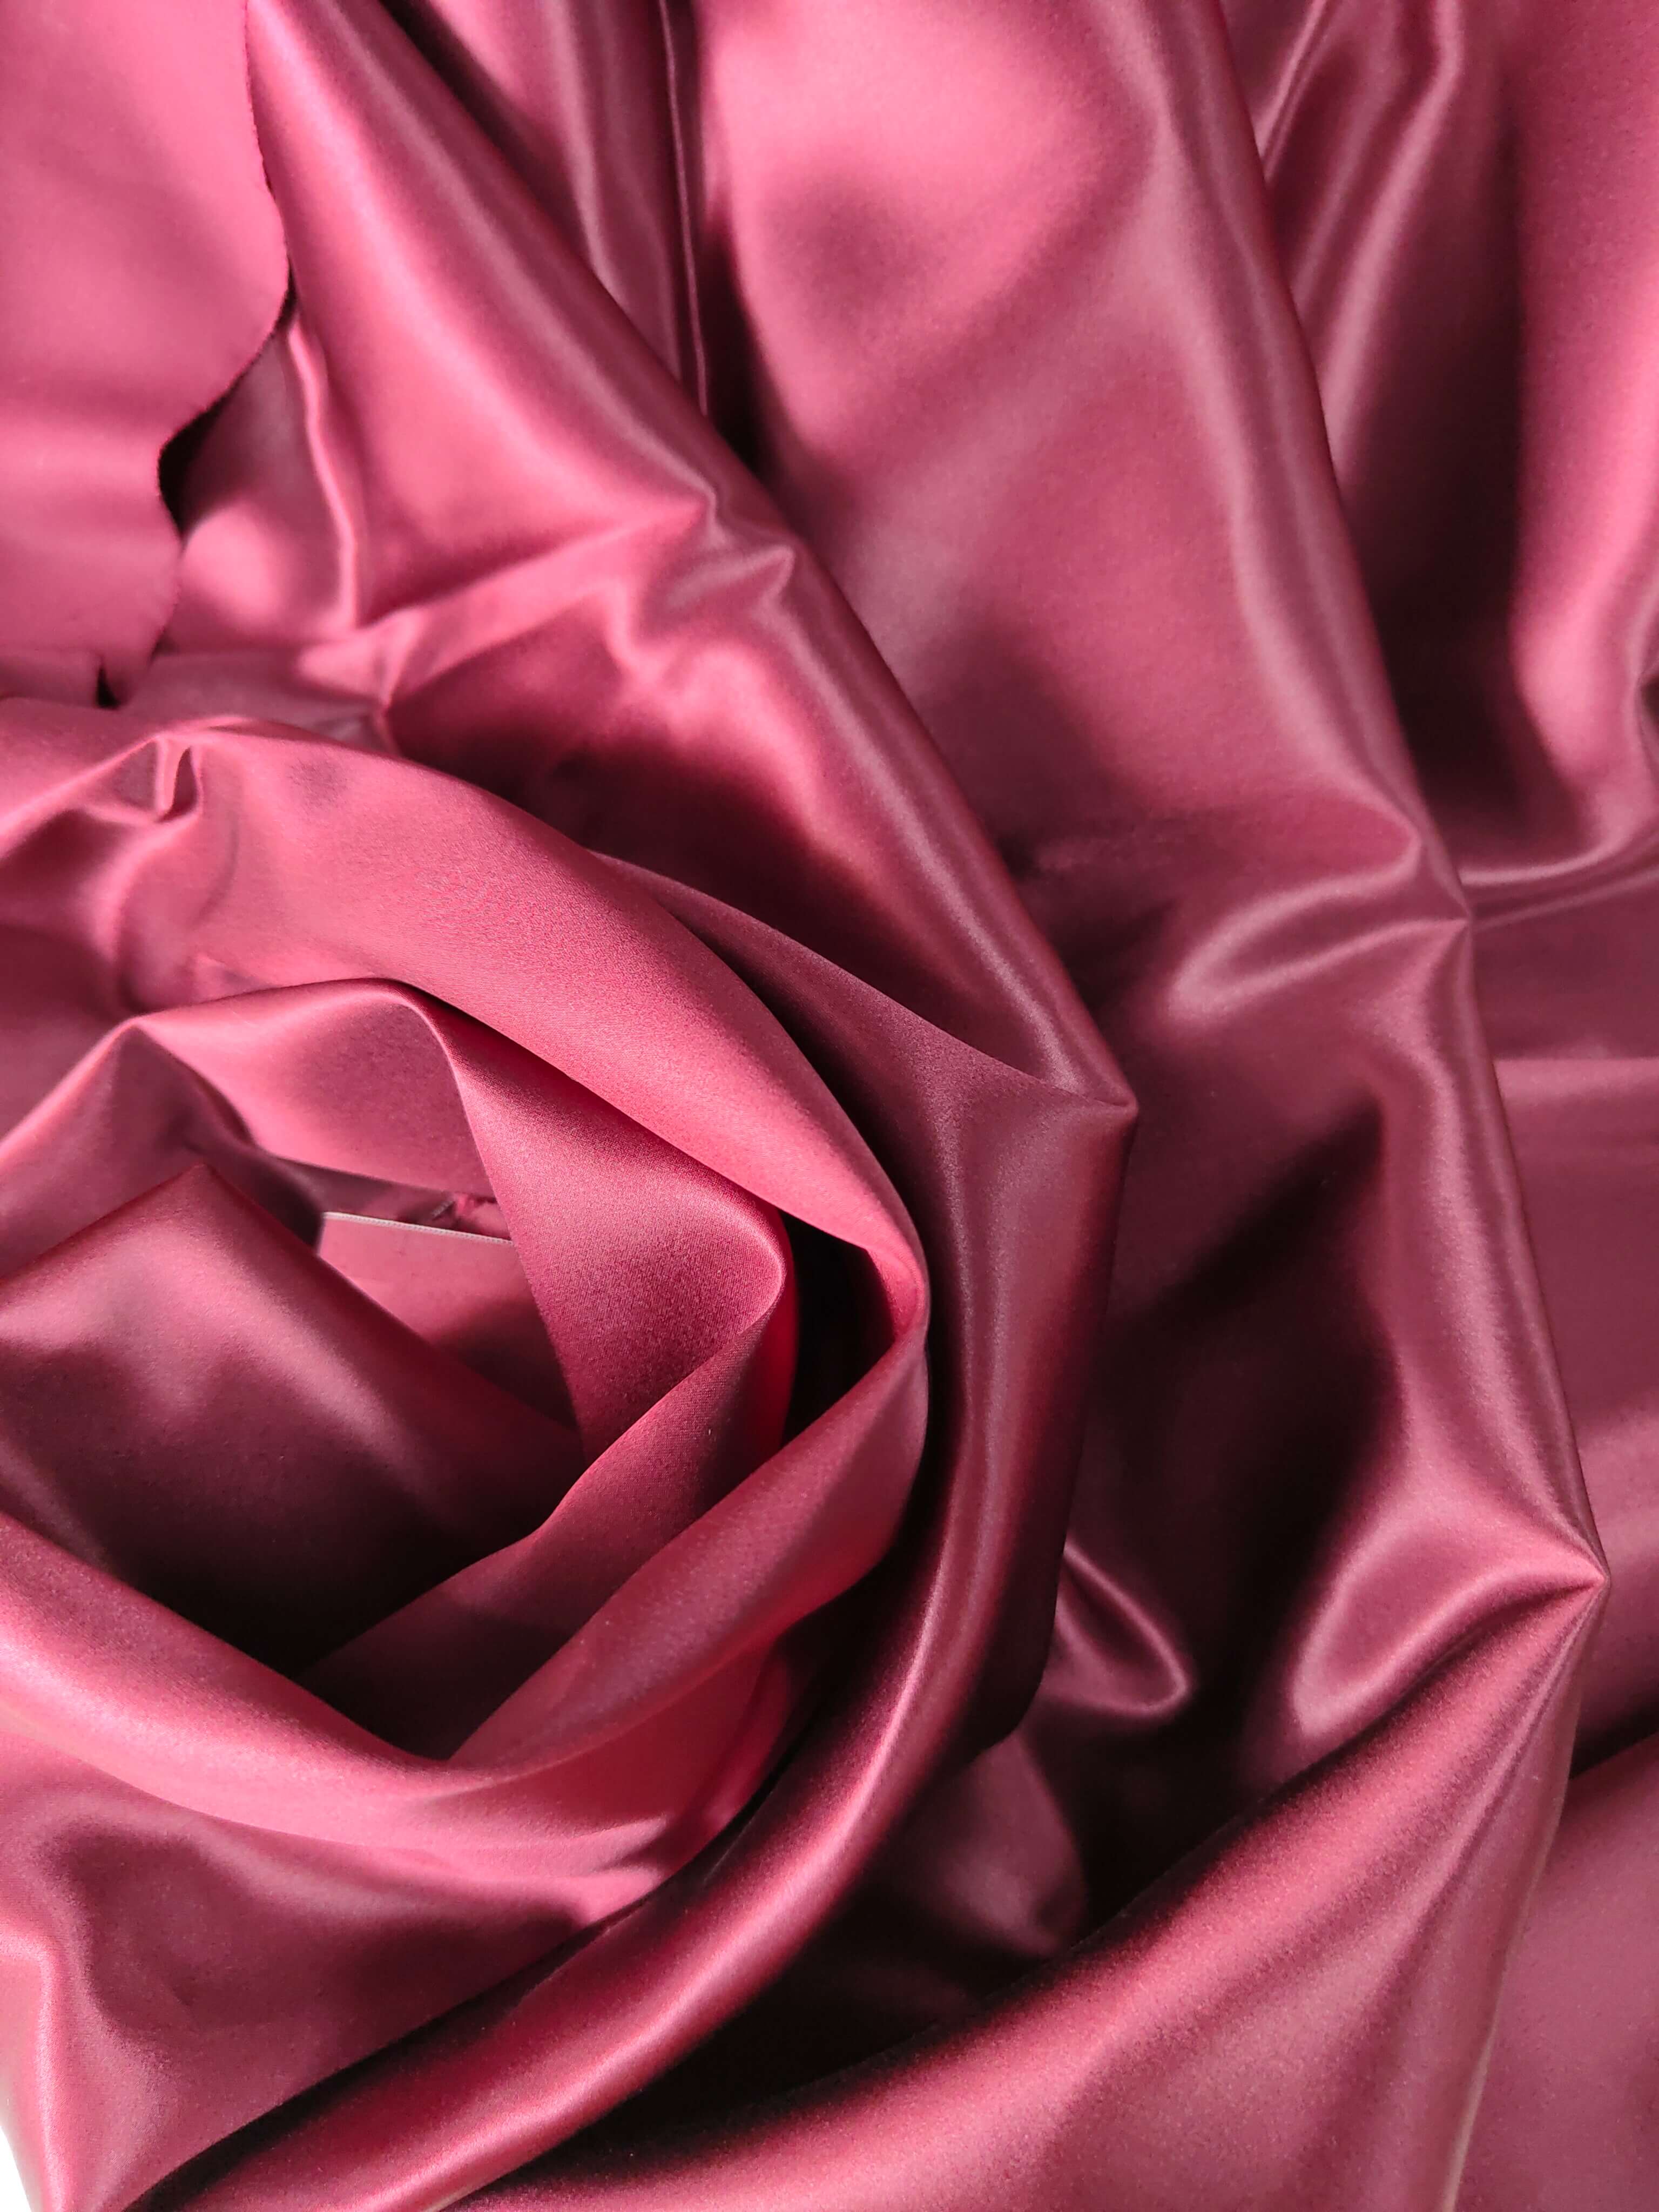 Bulk Silk Fabric Wholesale